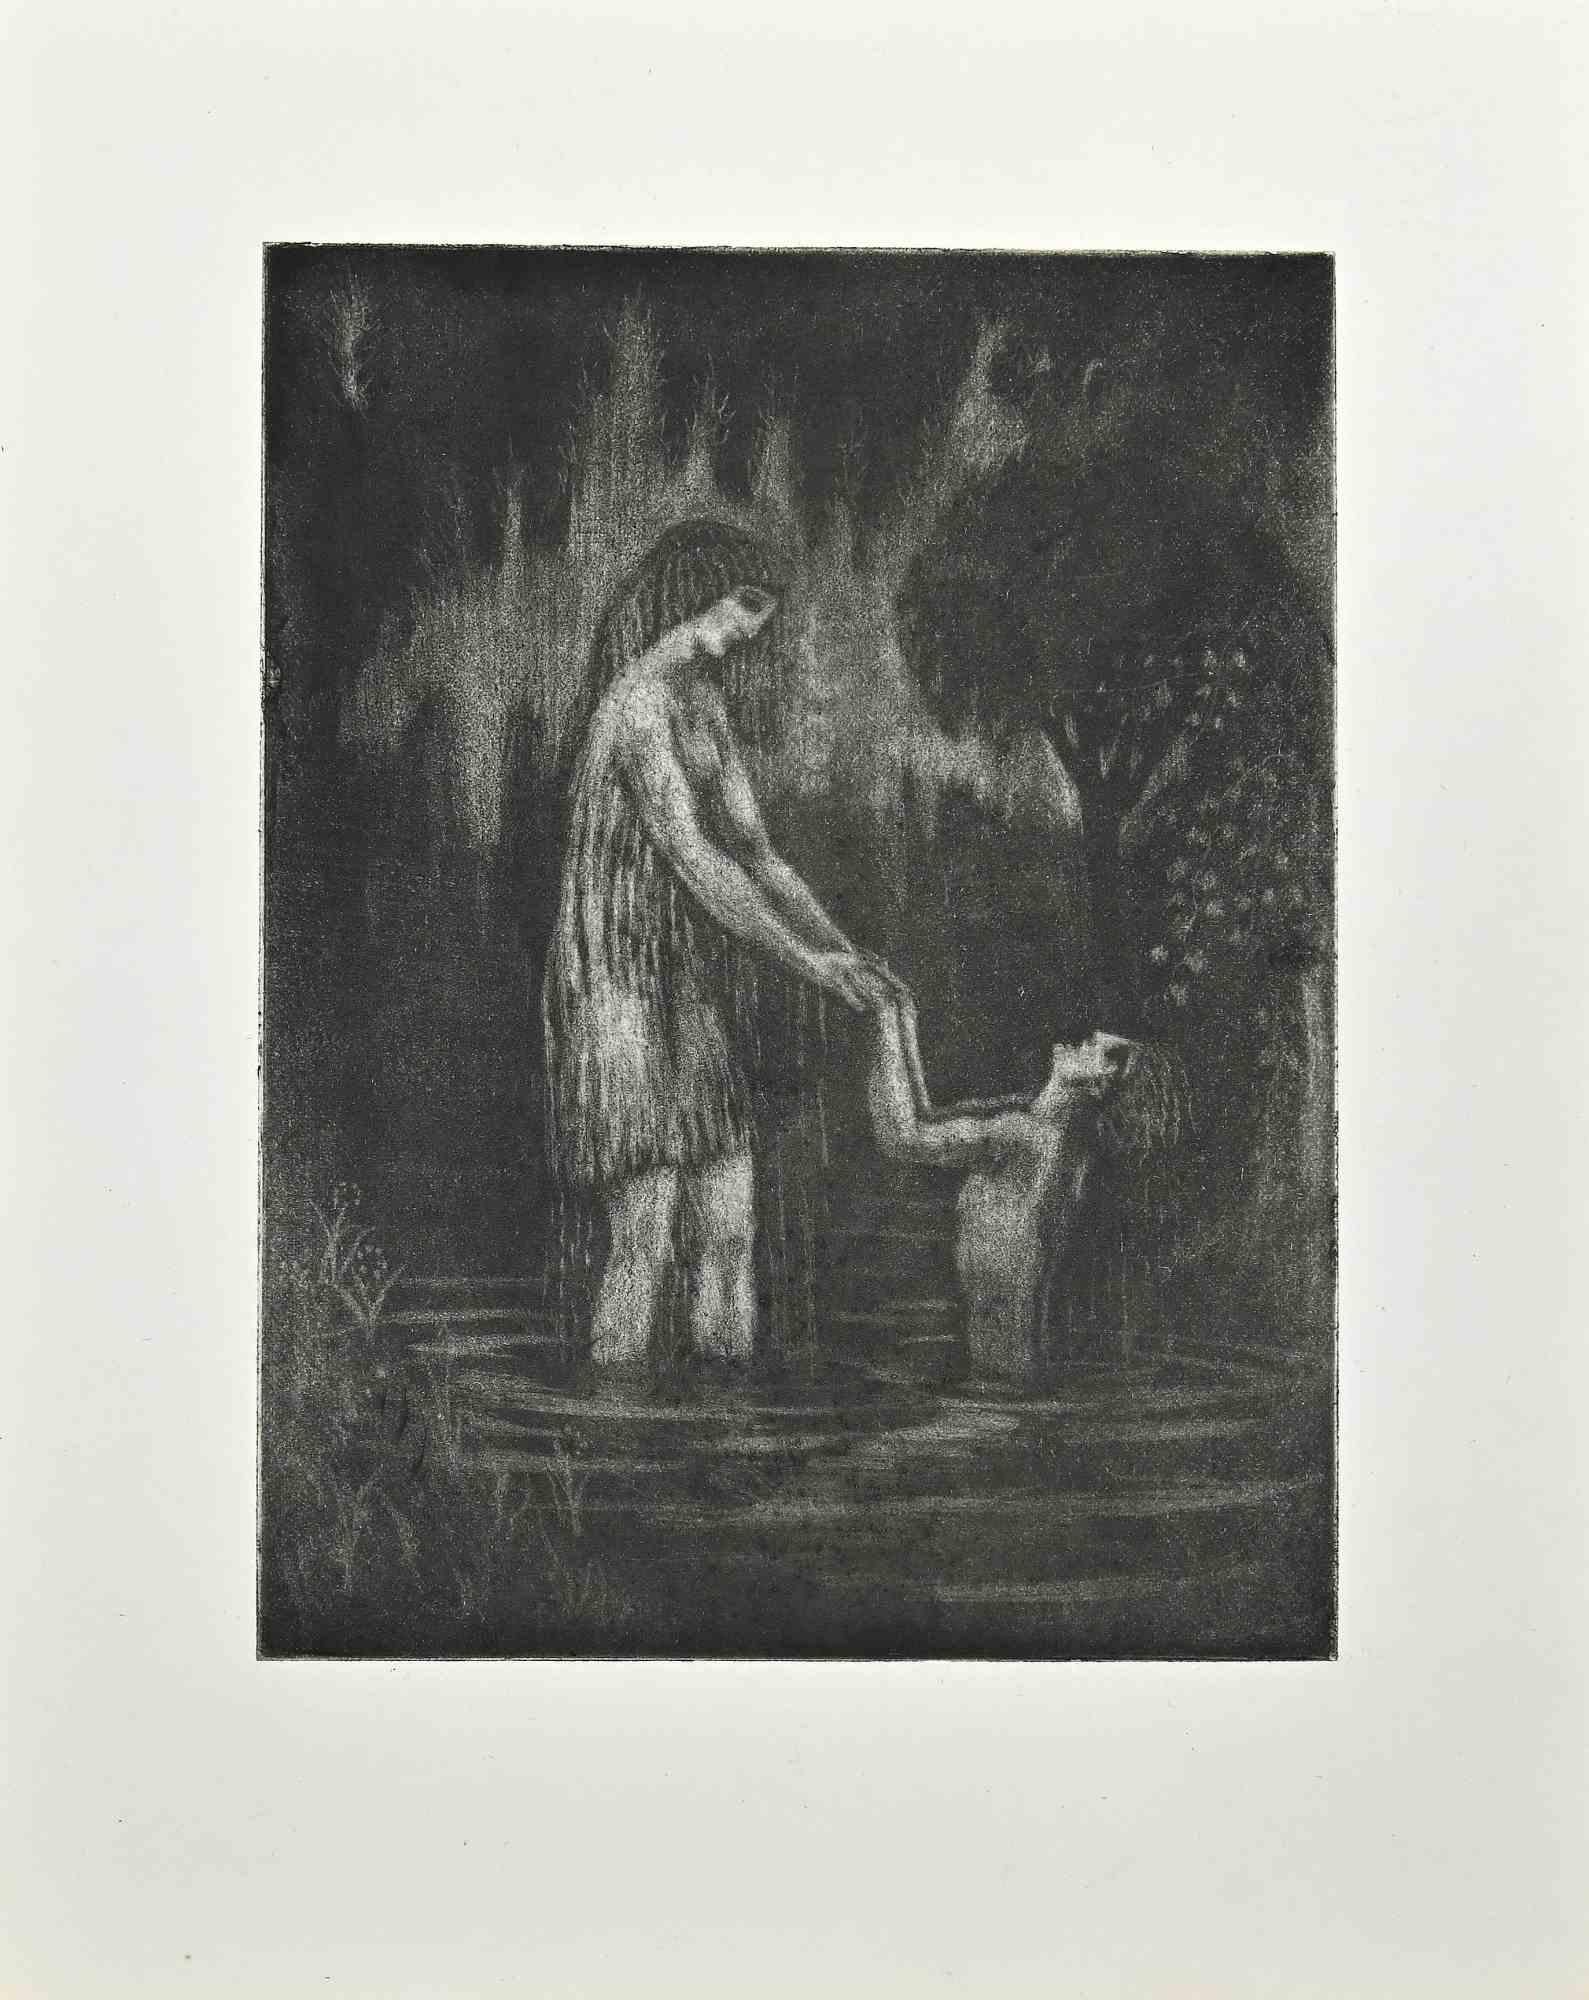 Le Bain Shandy est une gravure originale réalisée au début du 20e siècle par Raphael Drouart (1884-1972).

L'œuvre d'art est en bon état.

L'œuvre représente une scène mystique poétique par la maîtrise, l'harmonie de la Nature et de l'humain dans